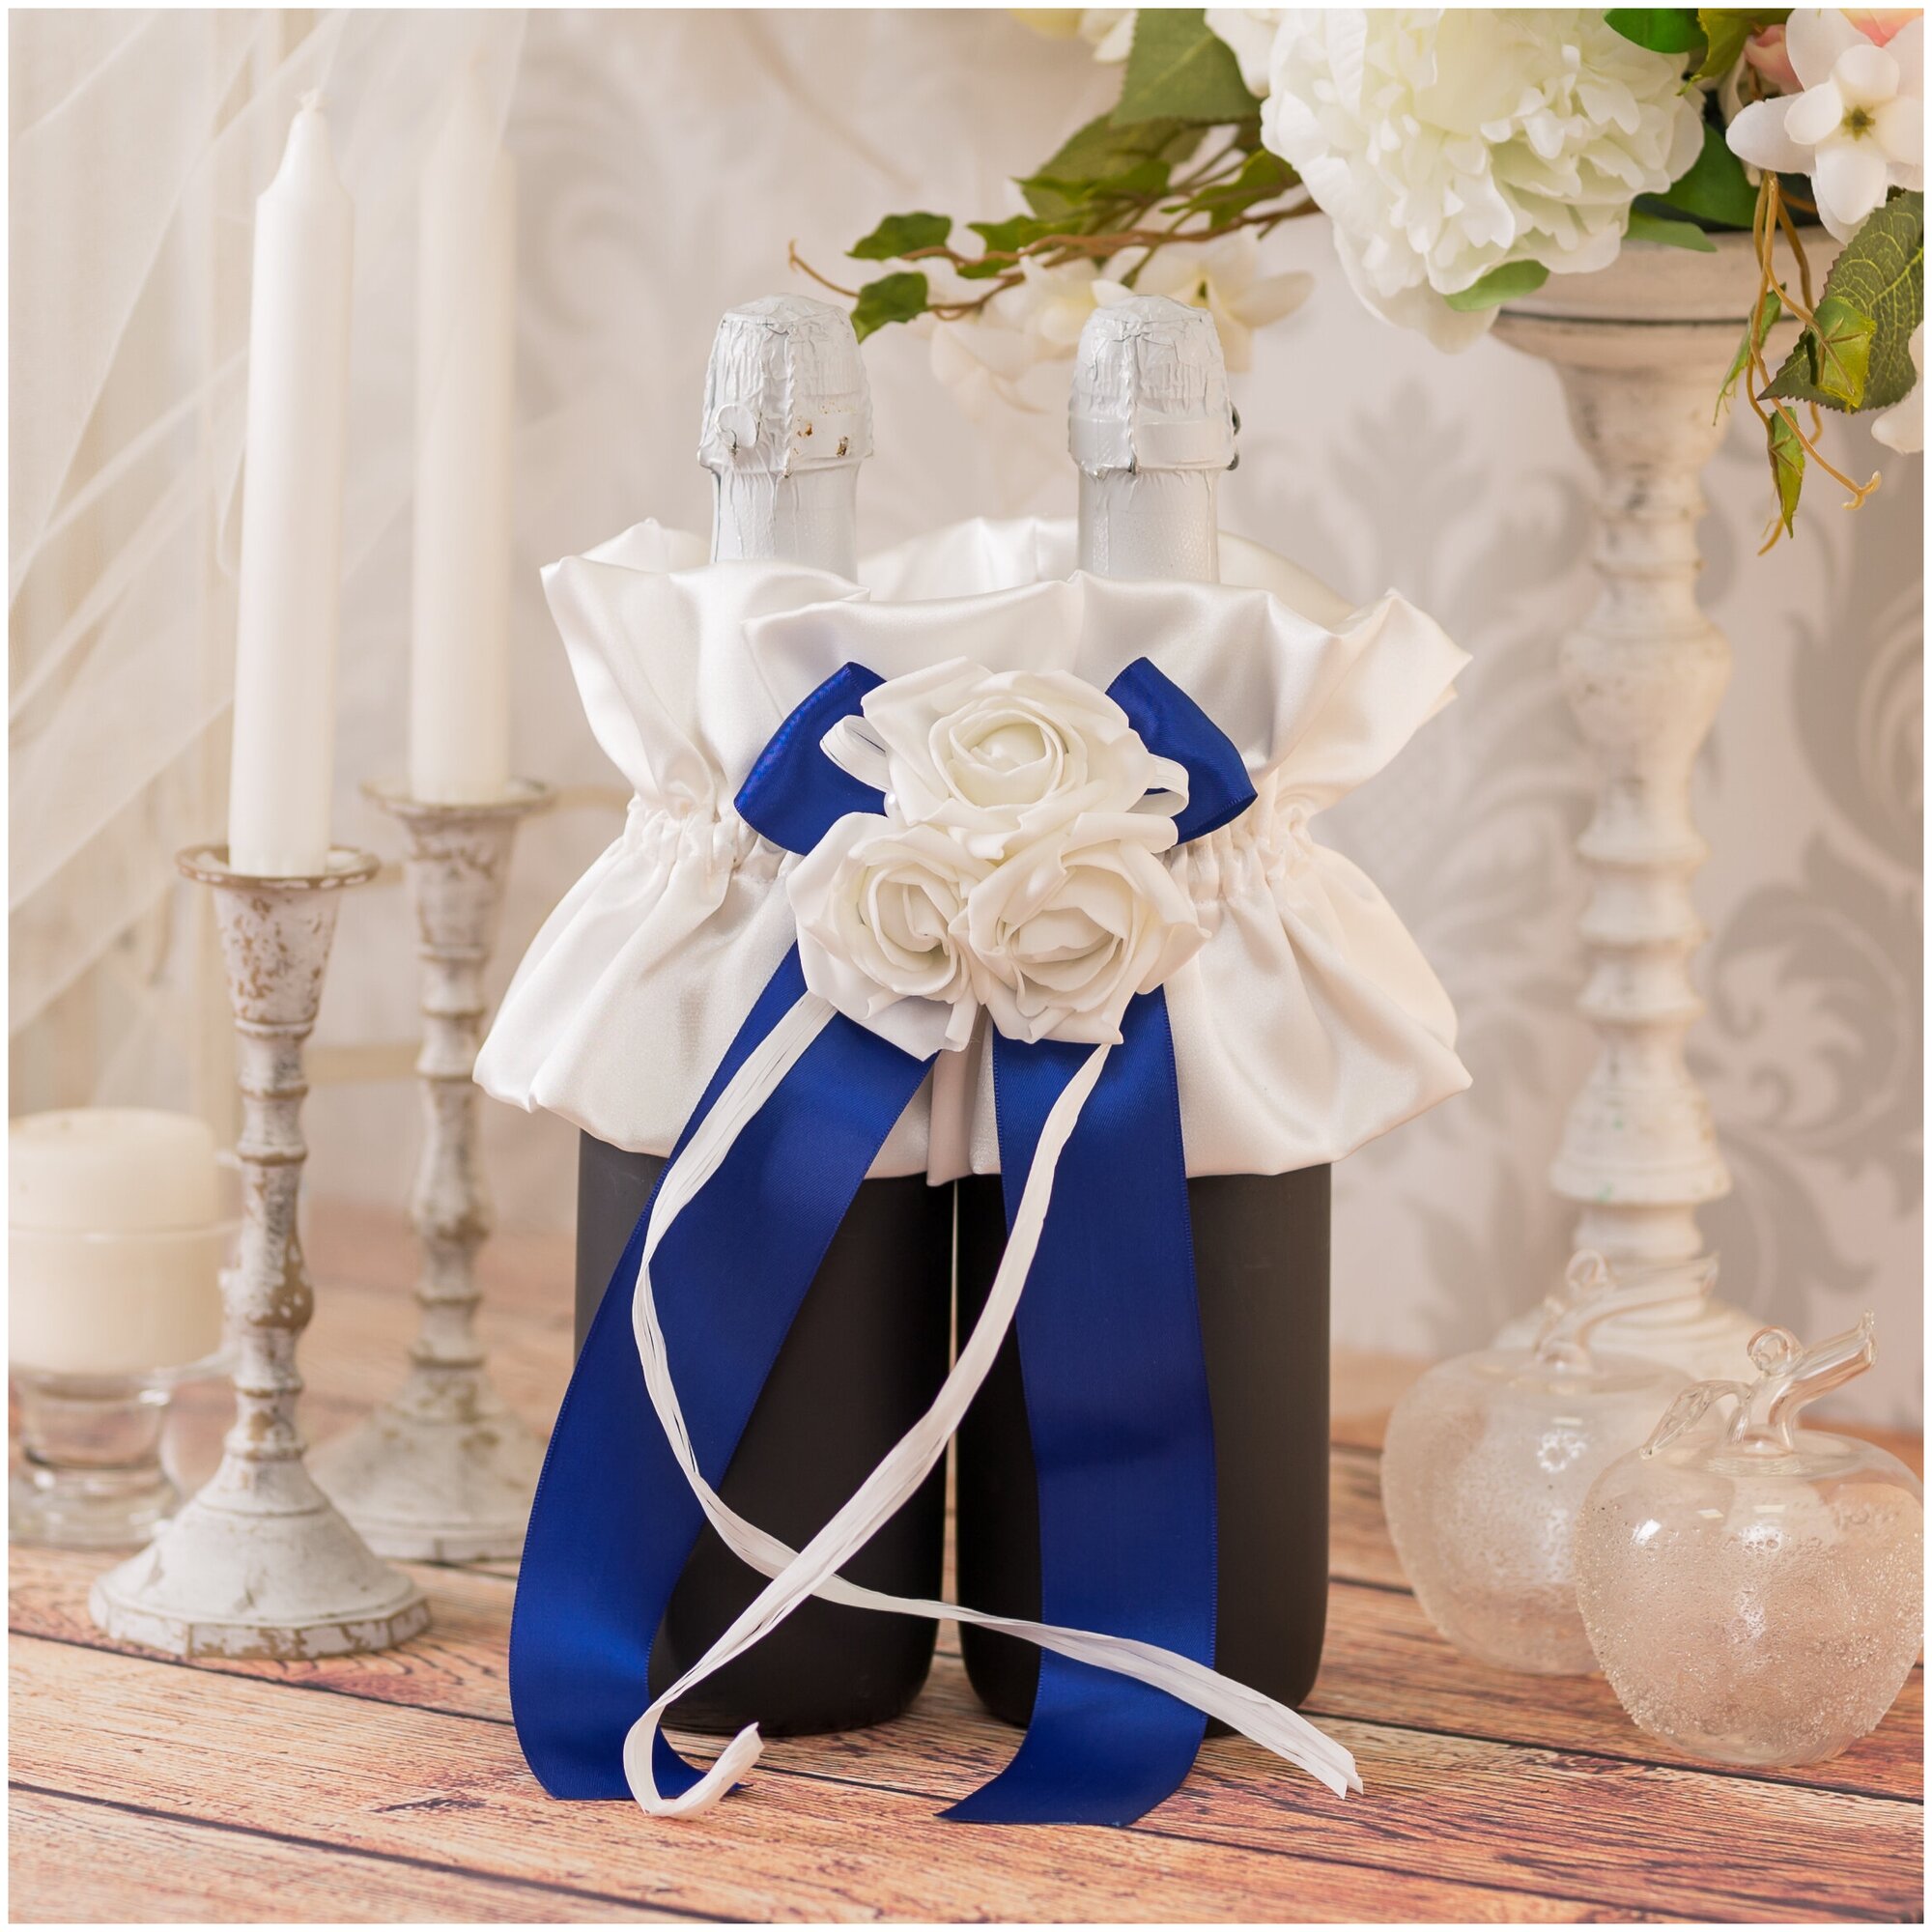 Украшение для бутылок шампанского на свадьбу молодоженам "Сапфир" из атласа кремового оттенка с синим бантом, латексными розами и рафией